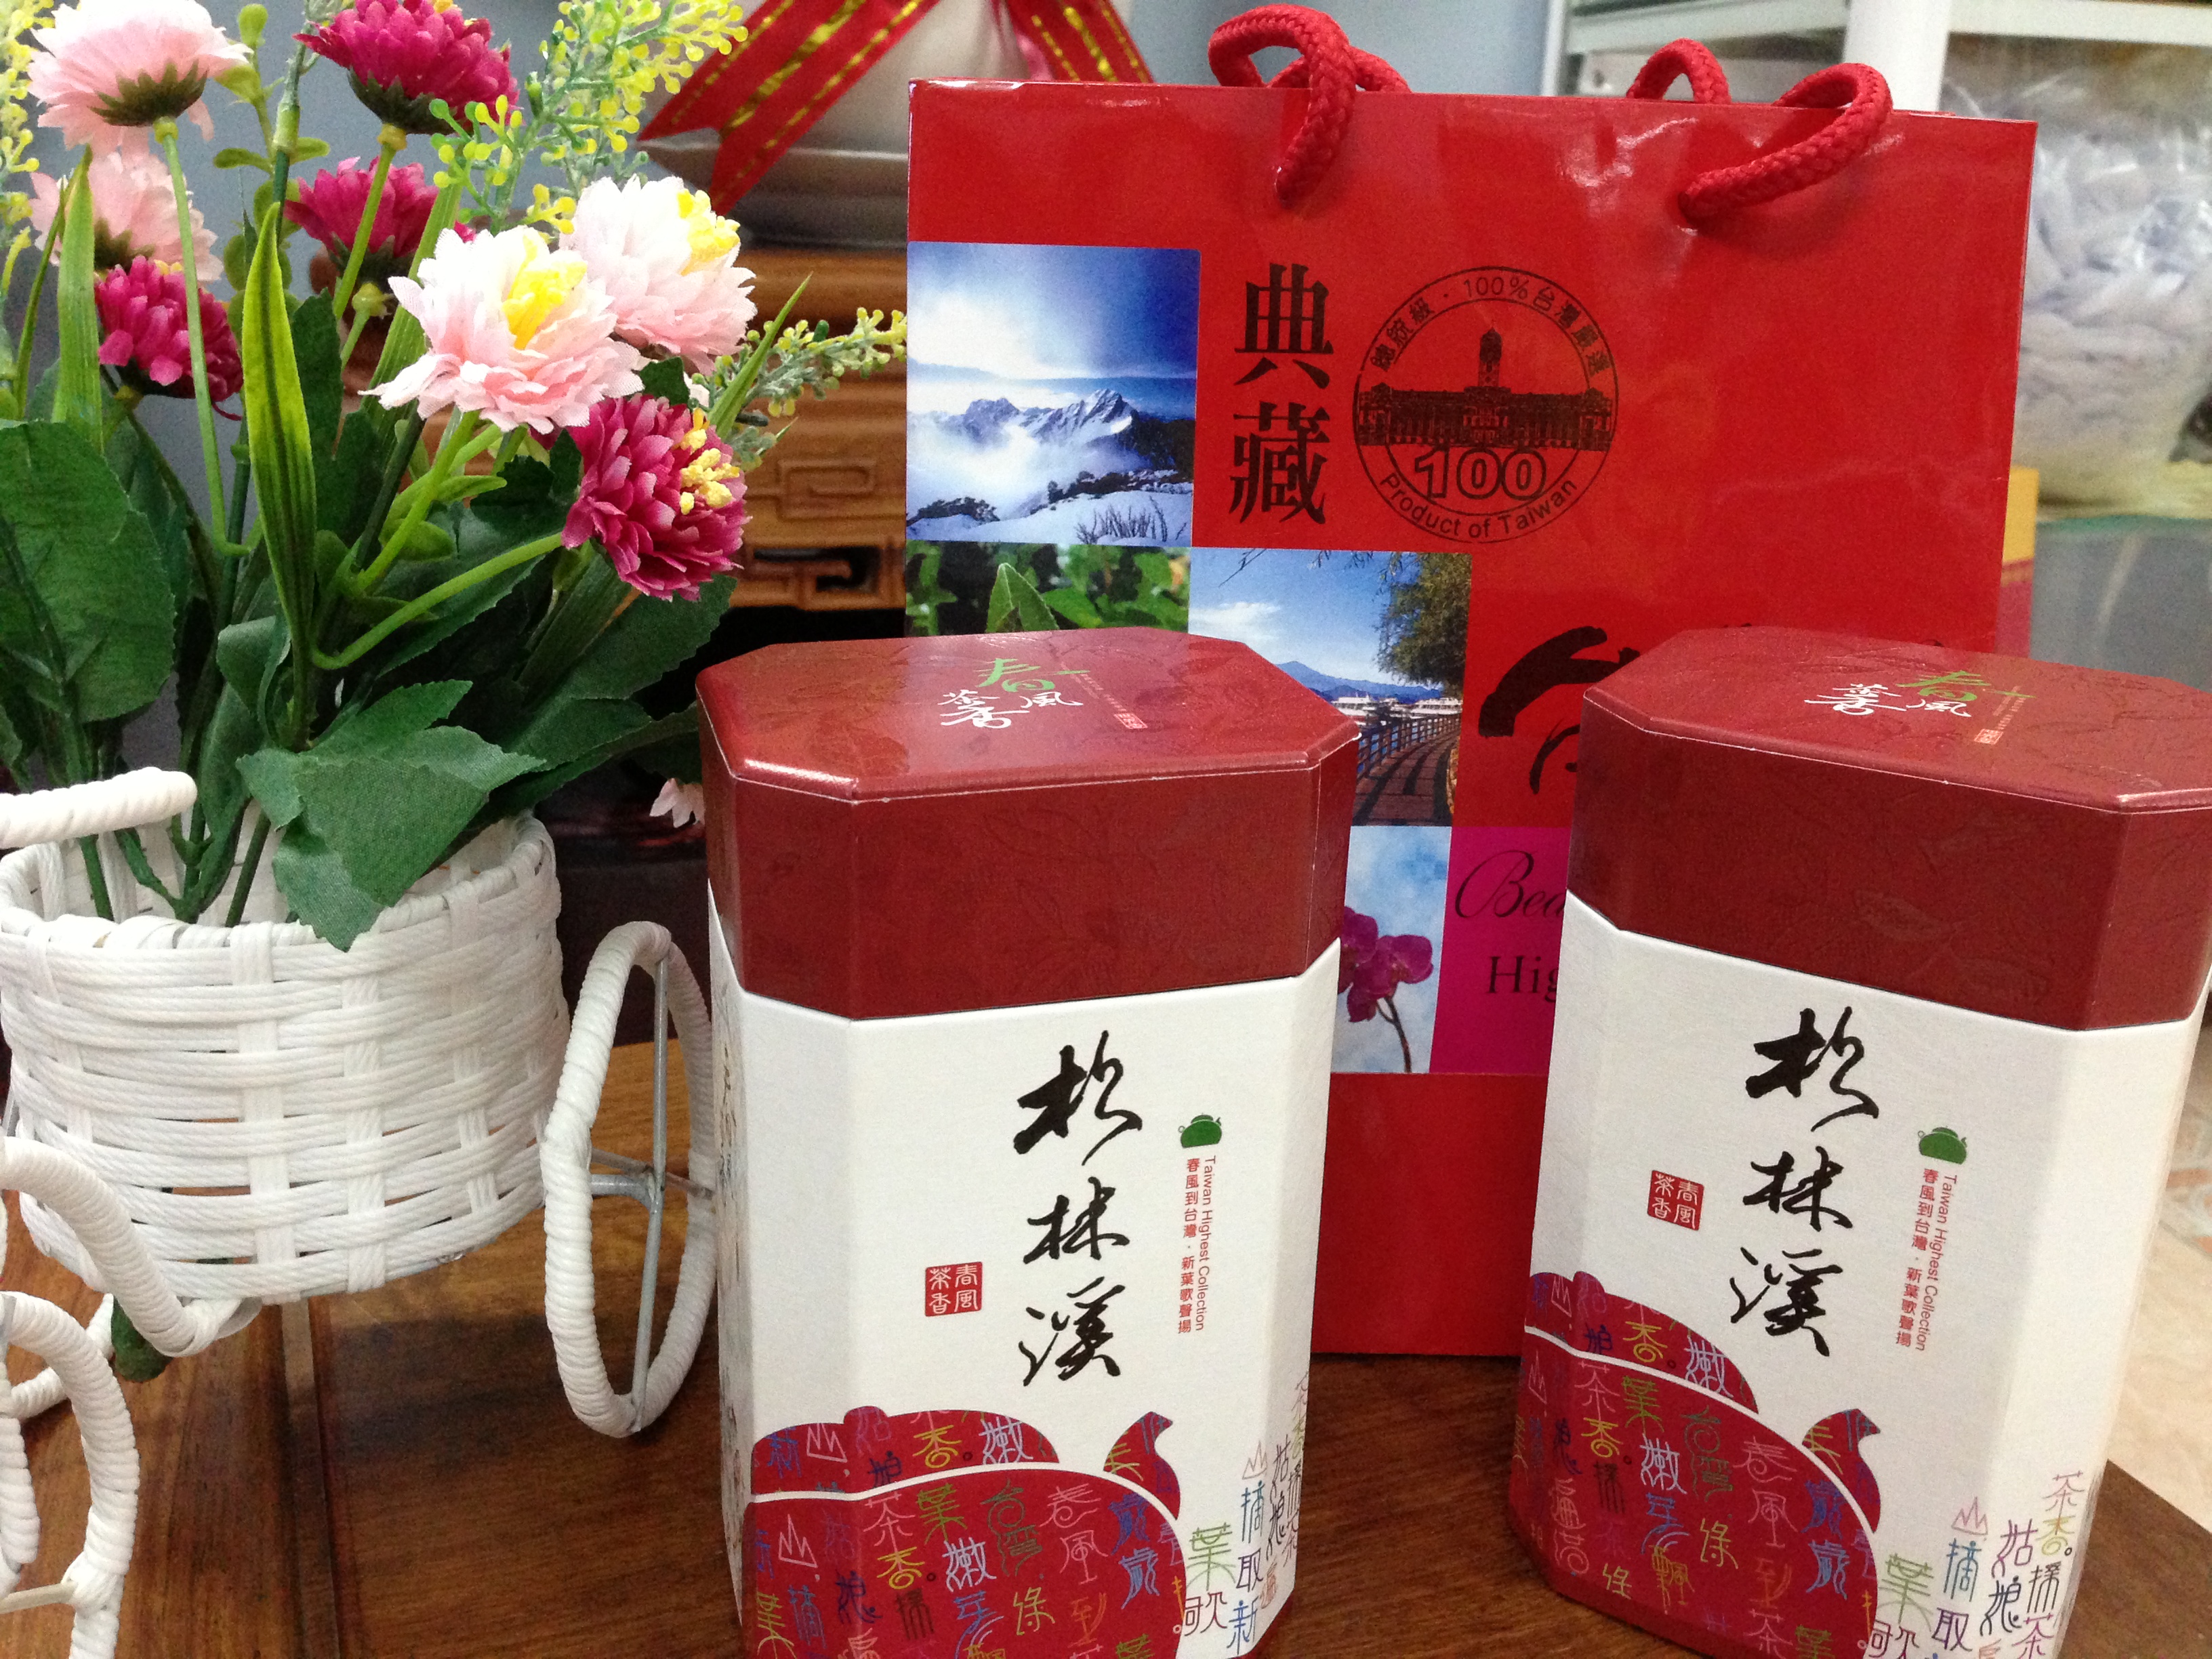 Taiwan oolong tea Lishan high